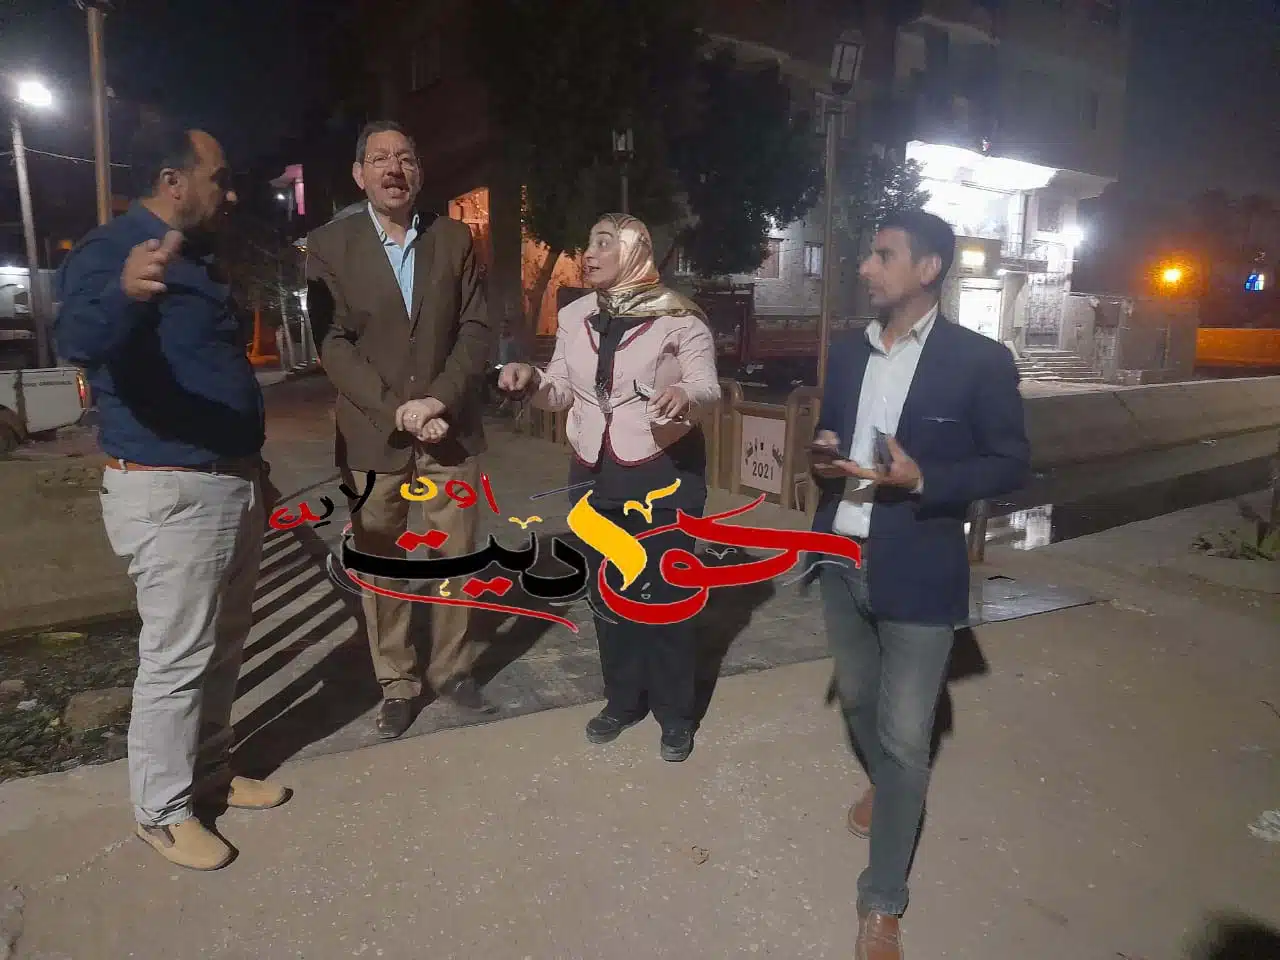 شاهد بالصور .. جمعية شباب ام خنان تصطحب رئيس مدينة الحوامدية فى جولة داخل القرية